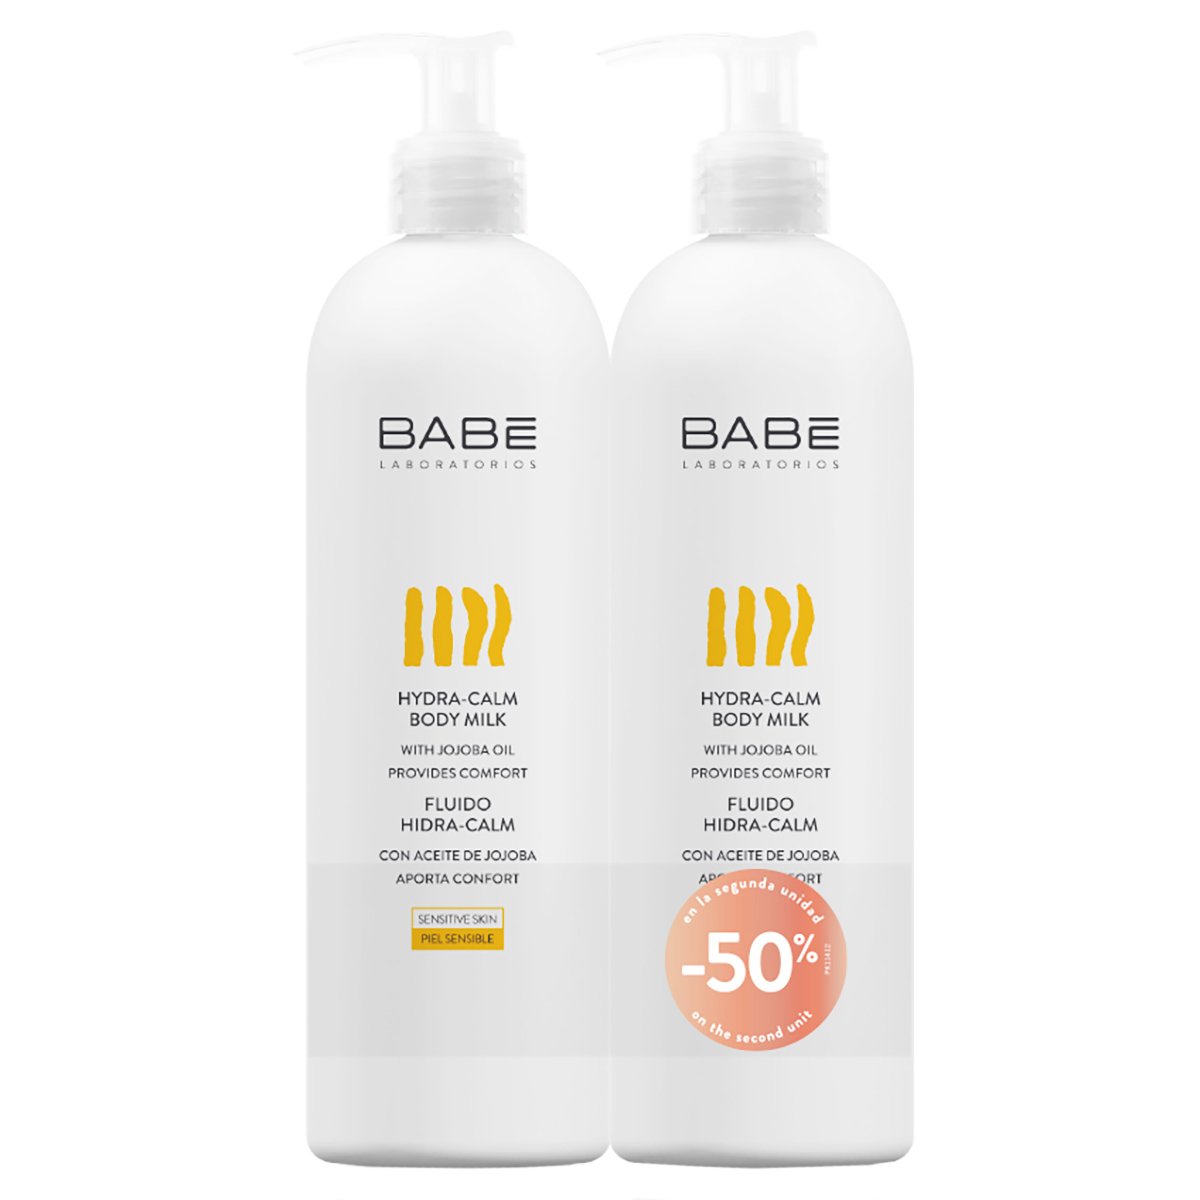 Babe Πακέτο Προσφοράς Body Hydra-Calm Body Milk Απαλό Ενυδατικό Γαλάκτωμα Σώματος Βελούδινης Υφής για Ευαίσθητες Επιδερμίδες 2x500ml -50% στο 2ο Προϊόν